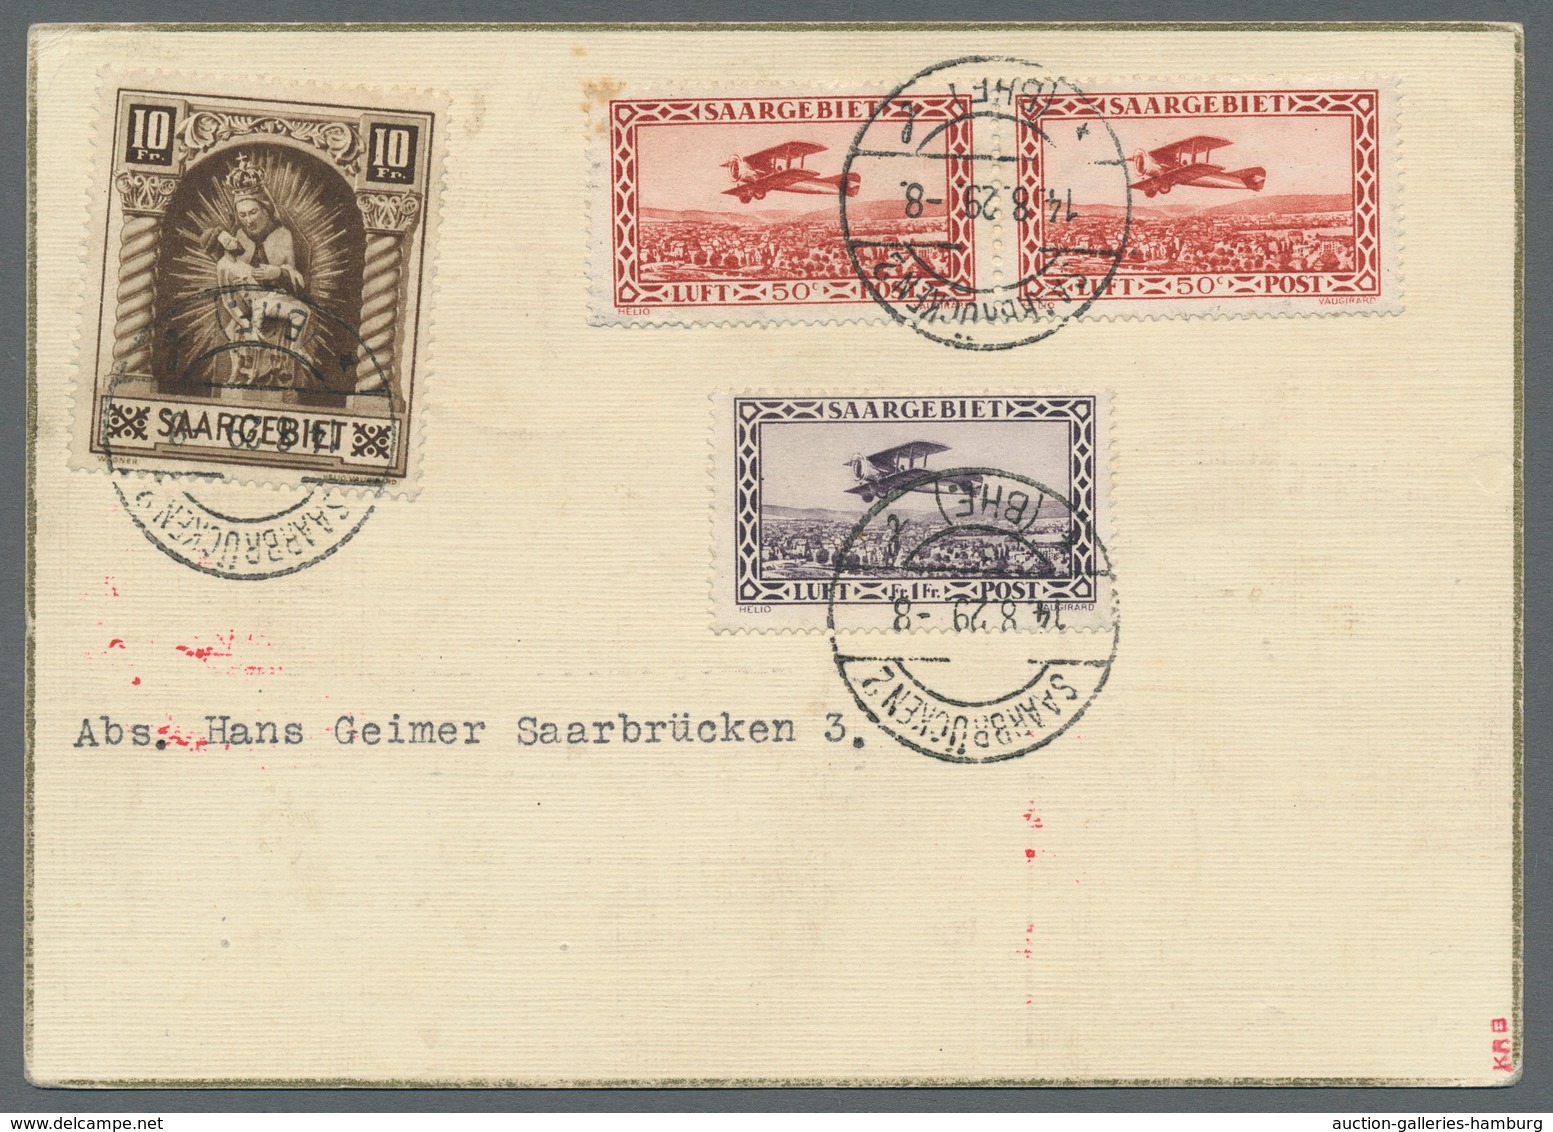 Zeppelinpost Deutschland: 1929 - Weltrundfahrt/Etappe Friedrichshafen-Lakehurst, Hochwertig Frankier - Luchtpost & Zeppelin